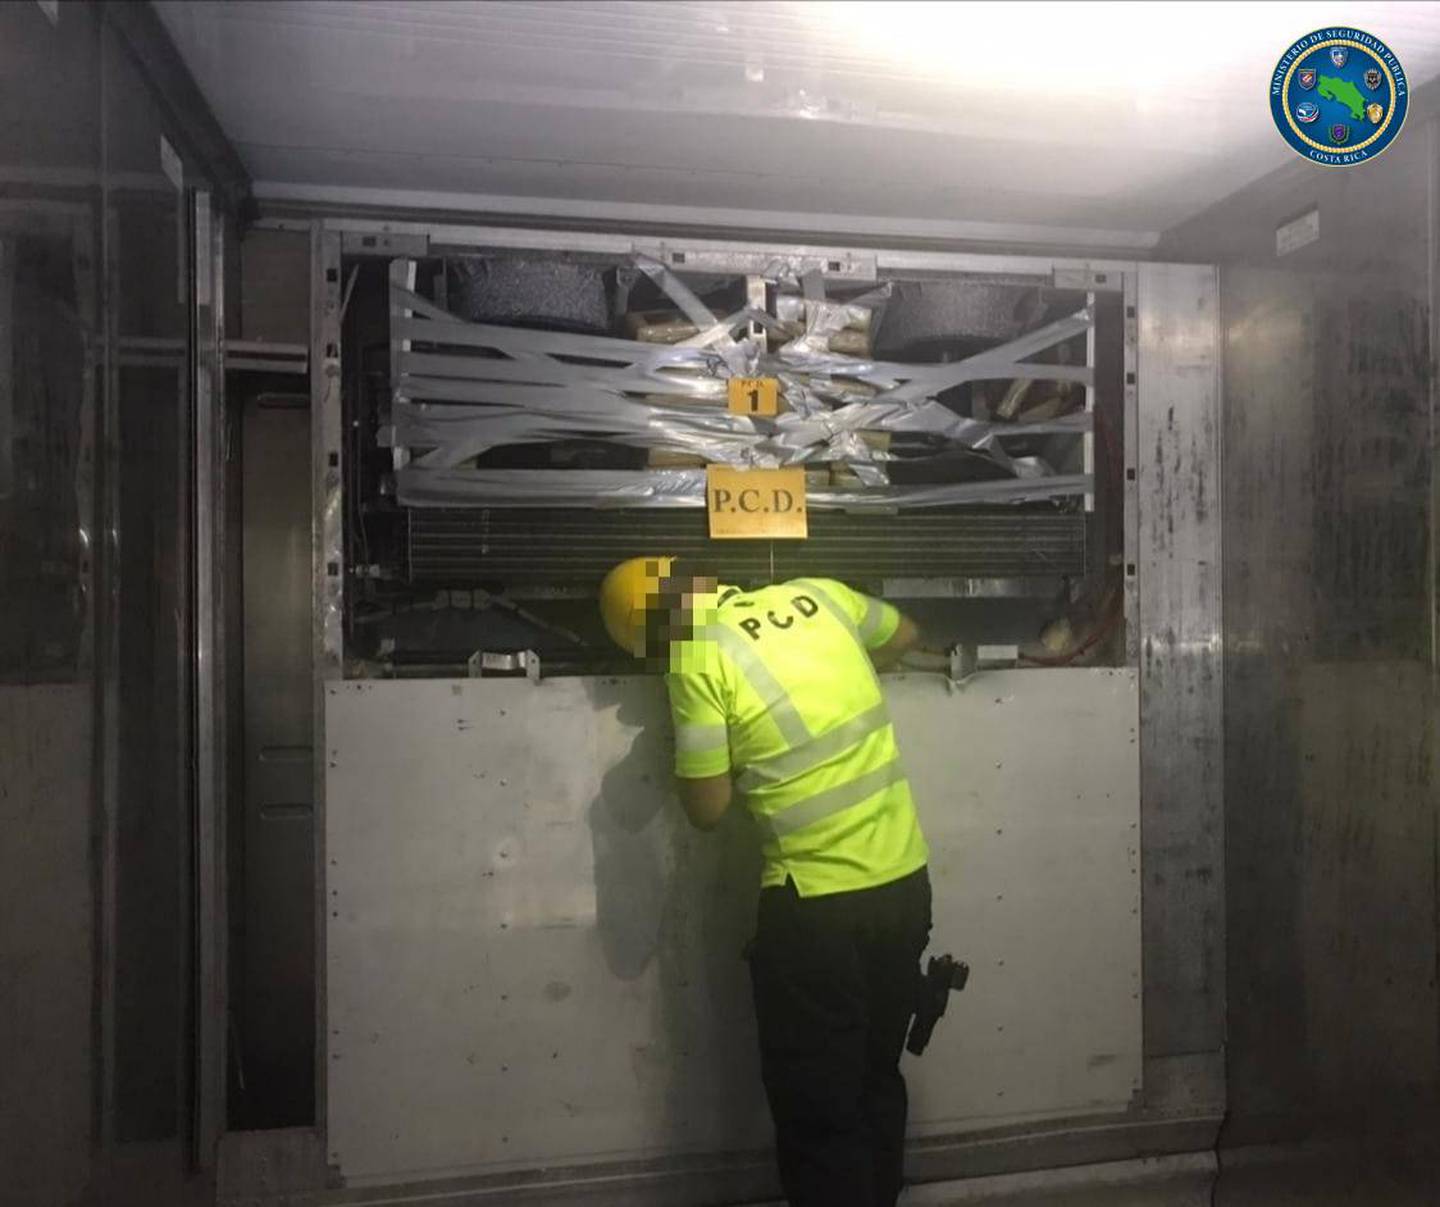 En la unidad de enfriamiento de un contenedor con banano, la PCD encontró una carga de 105 kilos de coca que iban para Alemania. Foto: Cortesía MSP.